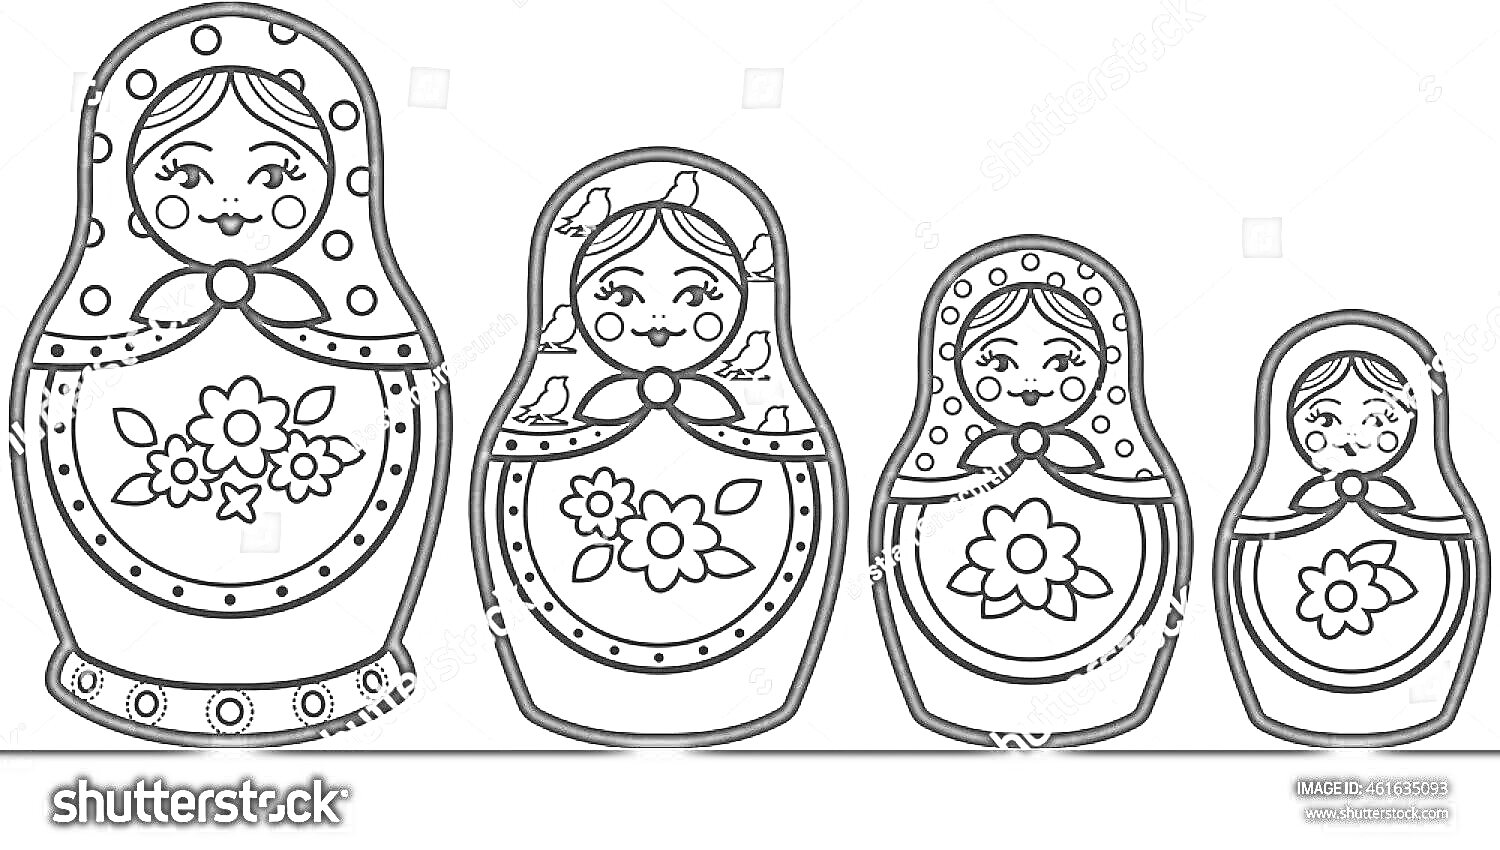 Раскраска Матрешка шаблон для раскрашивания с четырьмя фигурками разного размера, каждая с цветочным орнаментом